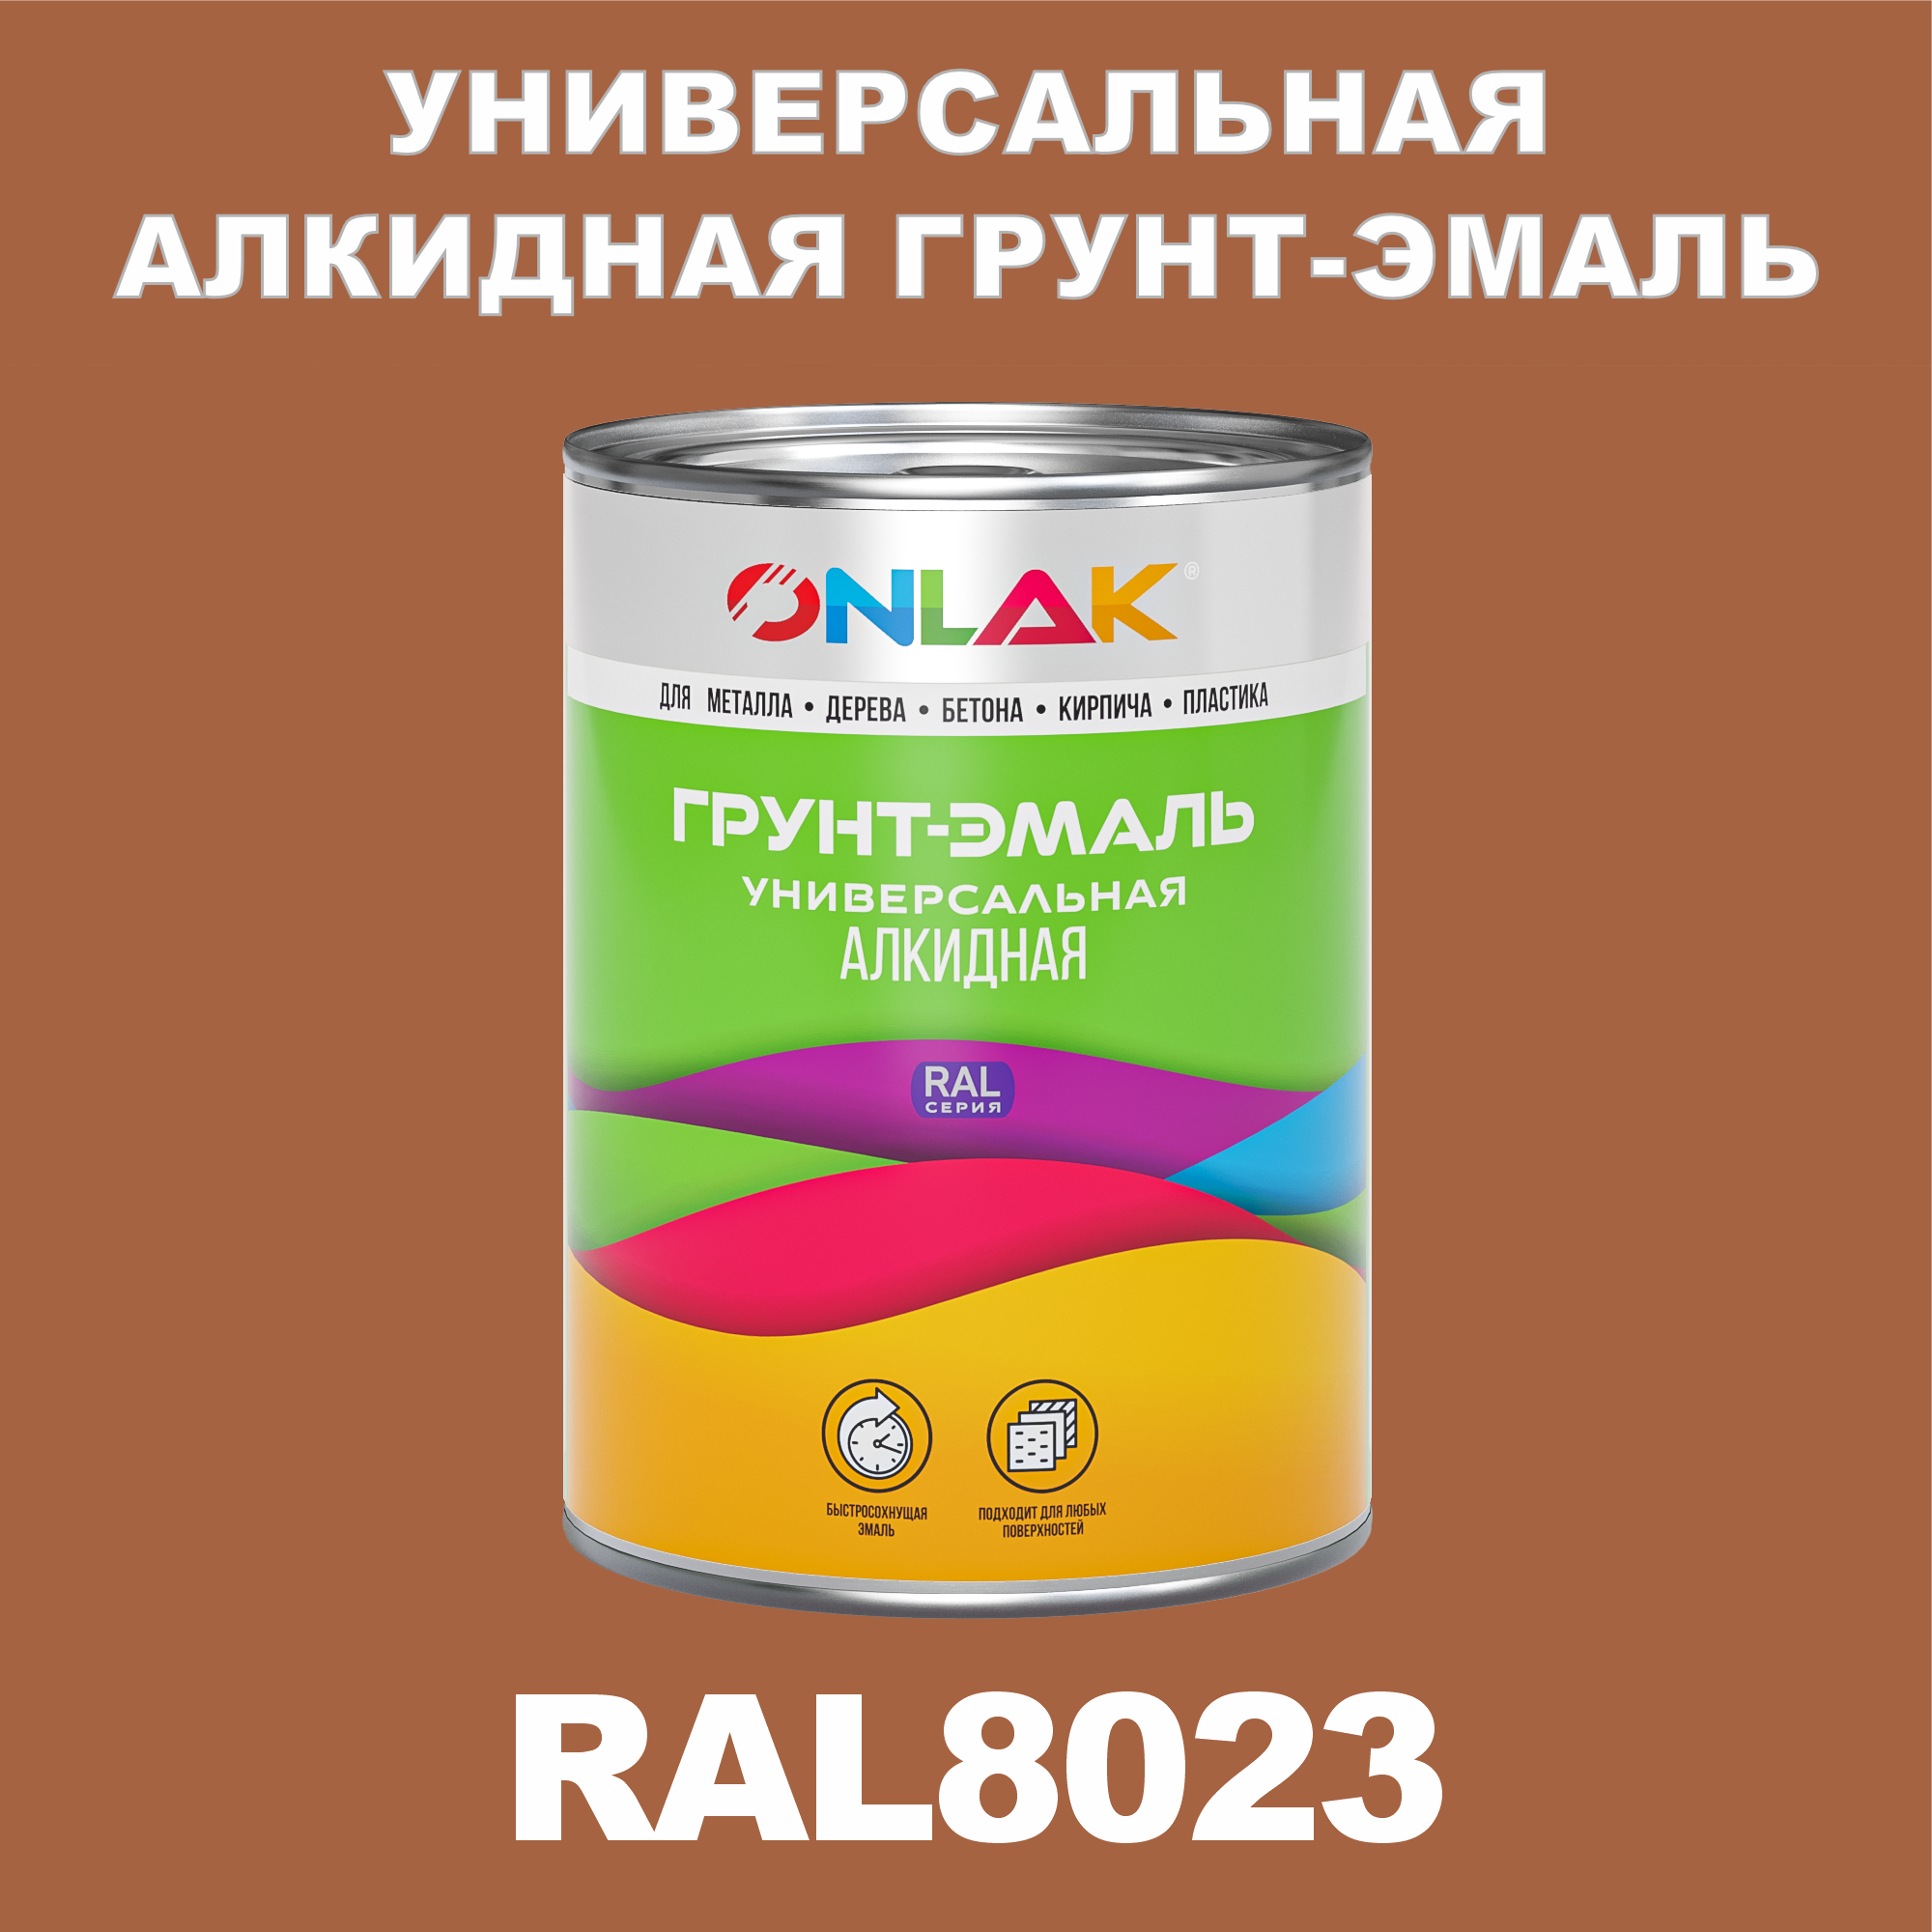 Грунт-эмаль ONLAK 1К RAL8023 антикоррозионная алкидная по металлу по ржавчине 1 кг грунт эмаль yollo по ржавчине алкидная белая 0 9 кг